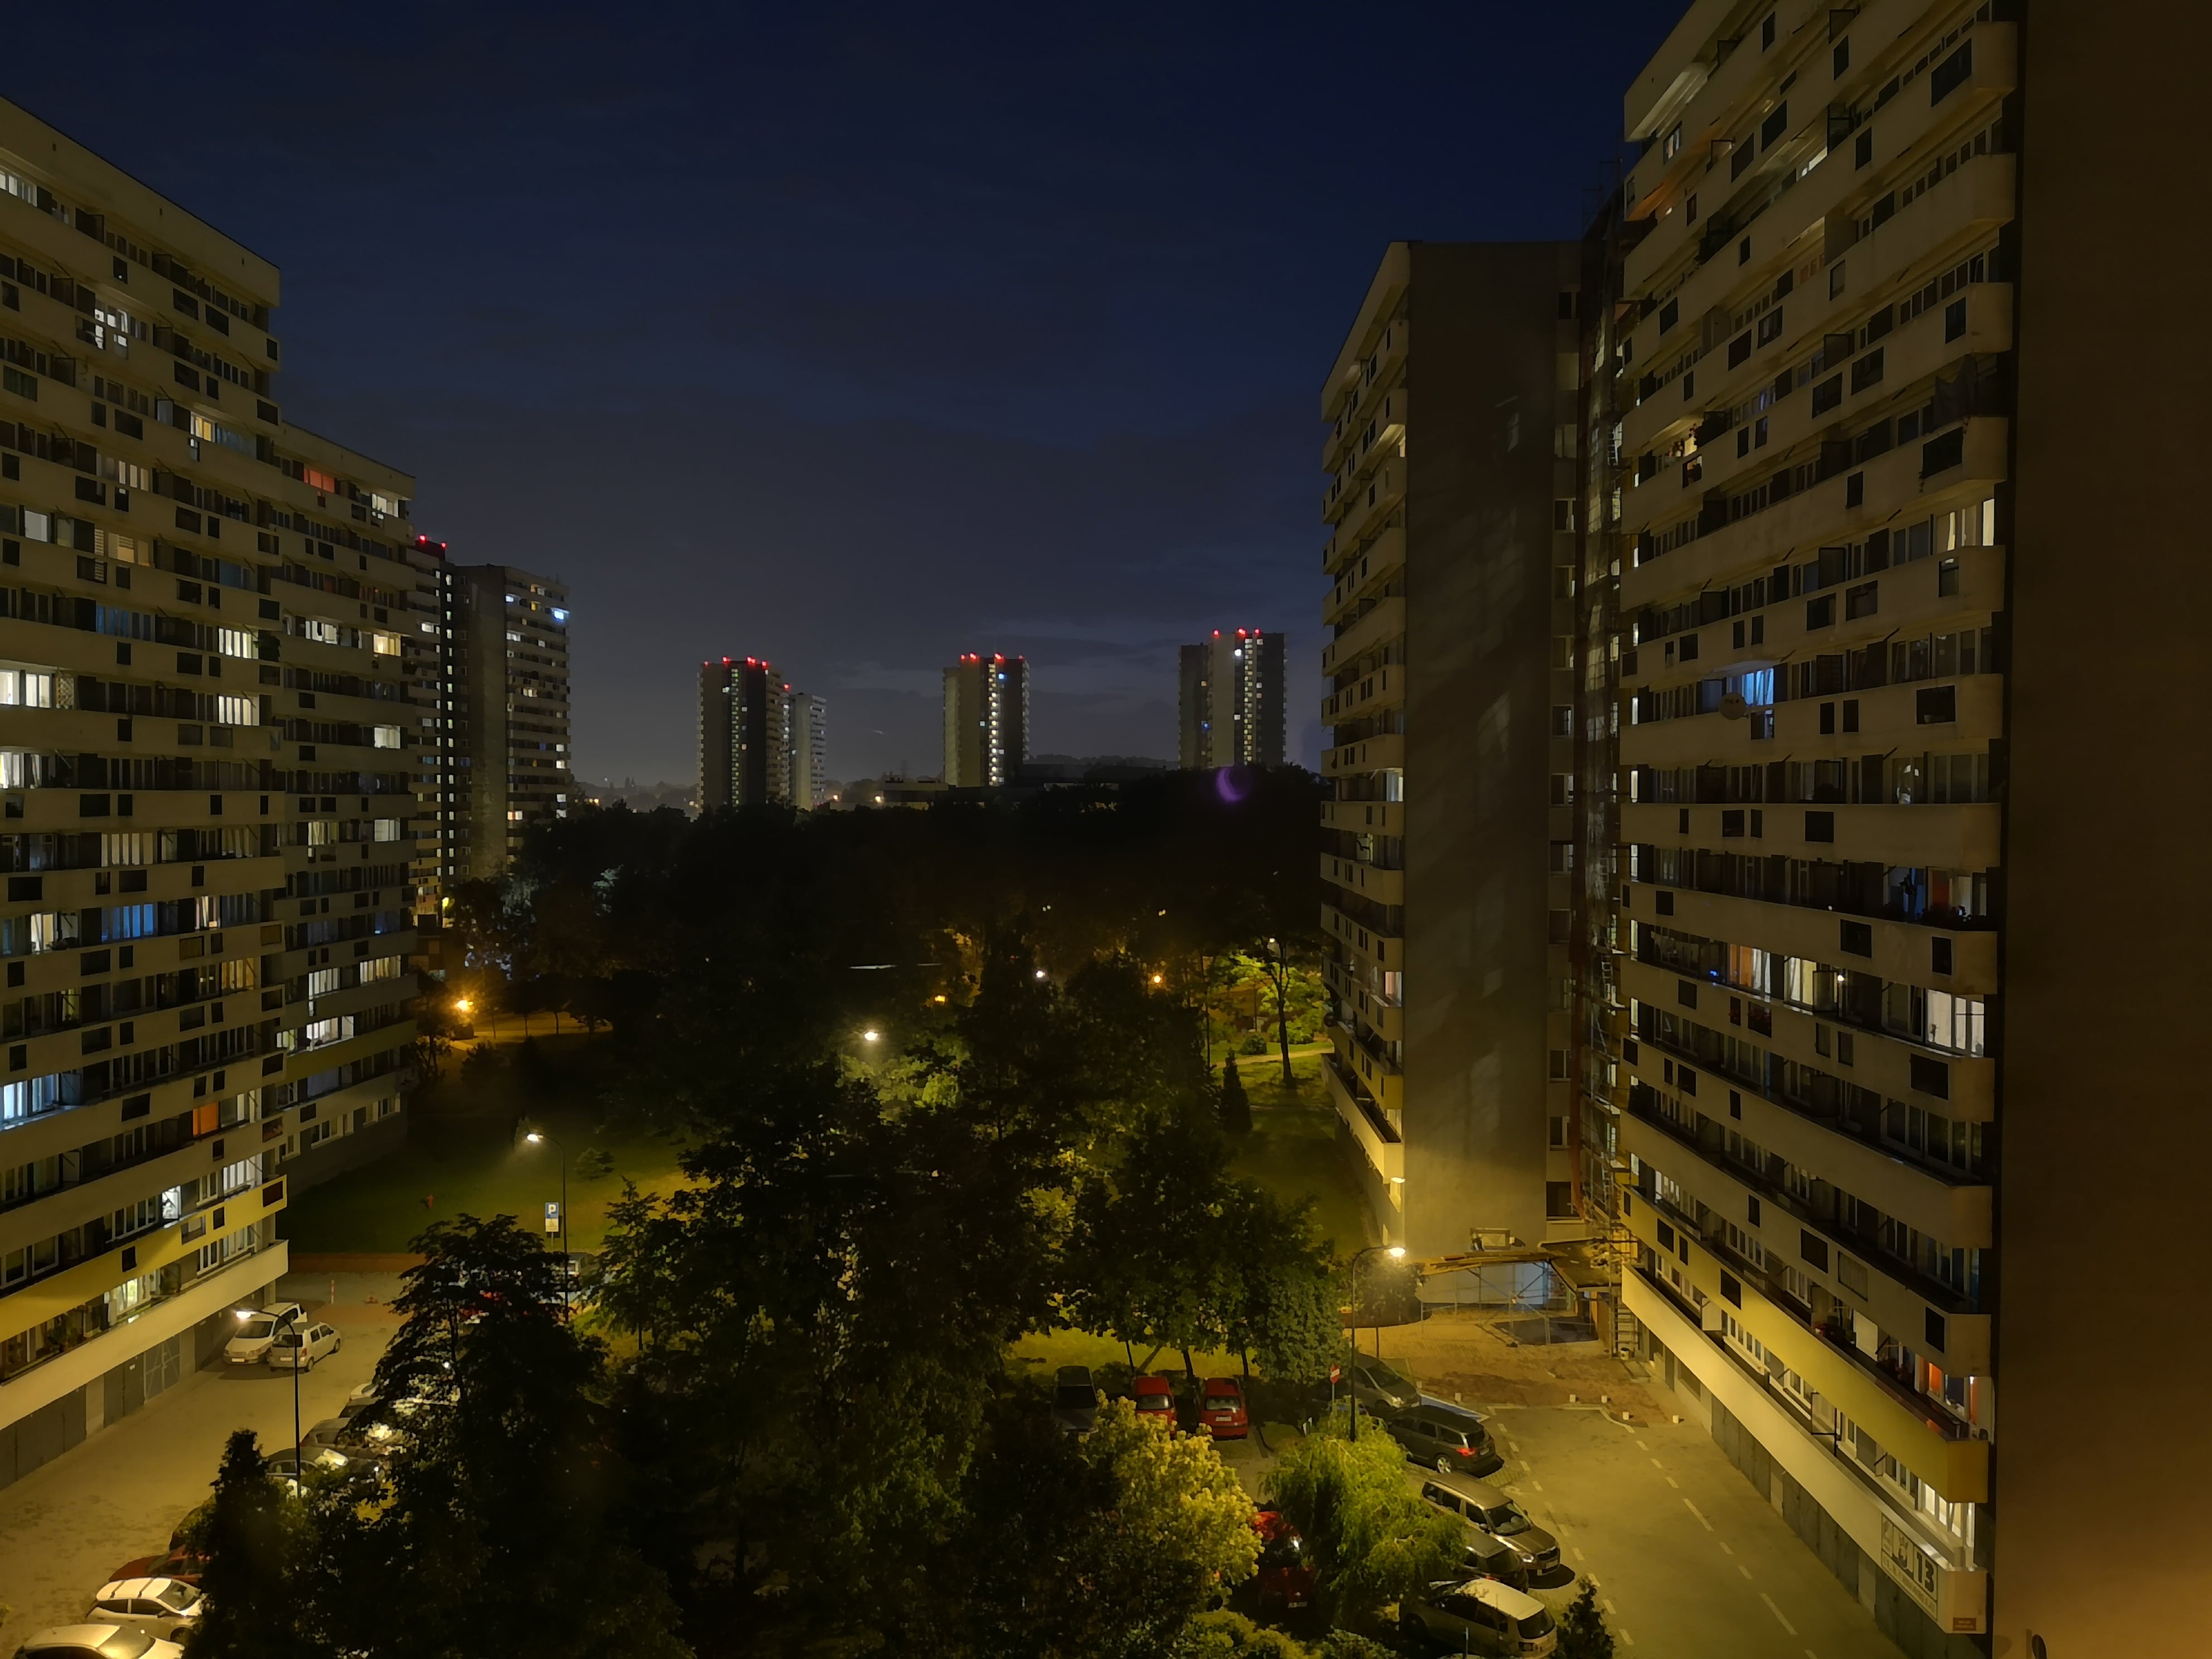 Zdjęcia nocne - Huawei P20